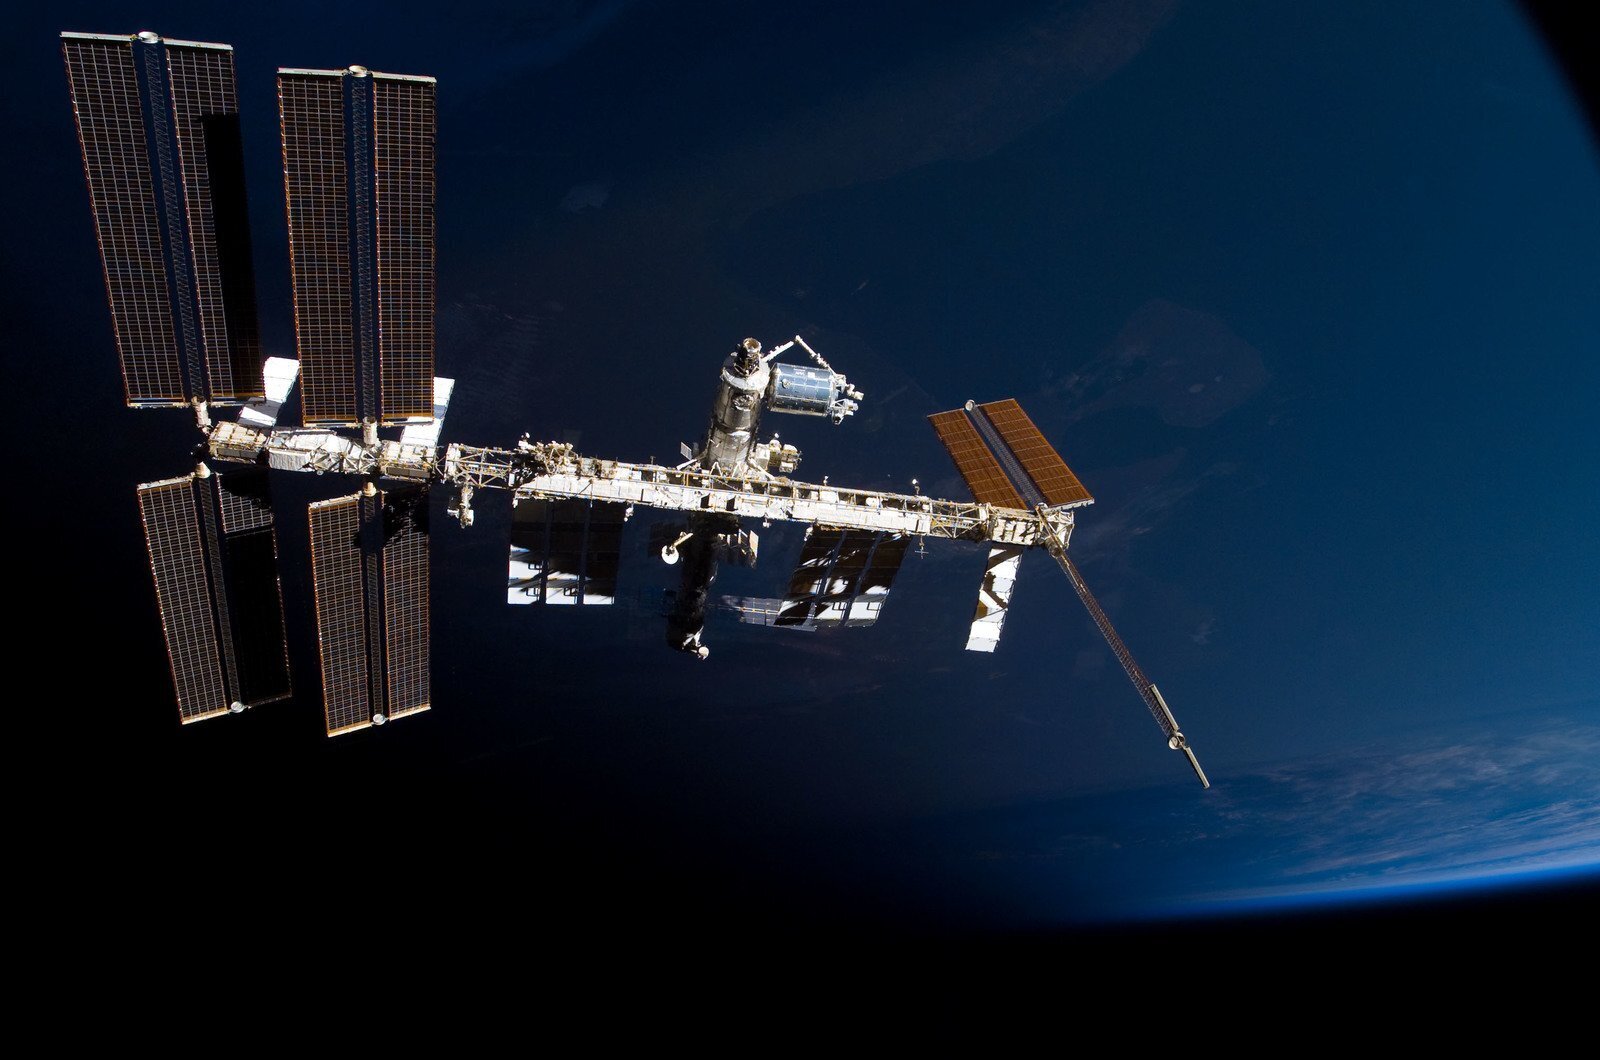 Mir schon. Космическая станция МКС. Спутник НАСА станция МКС. Космическая орбитальная станция мир. Атлантис космический аппарат.